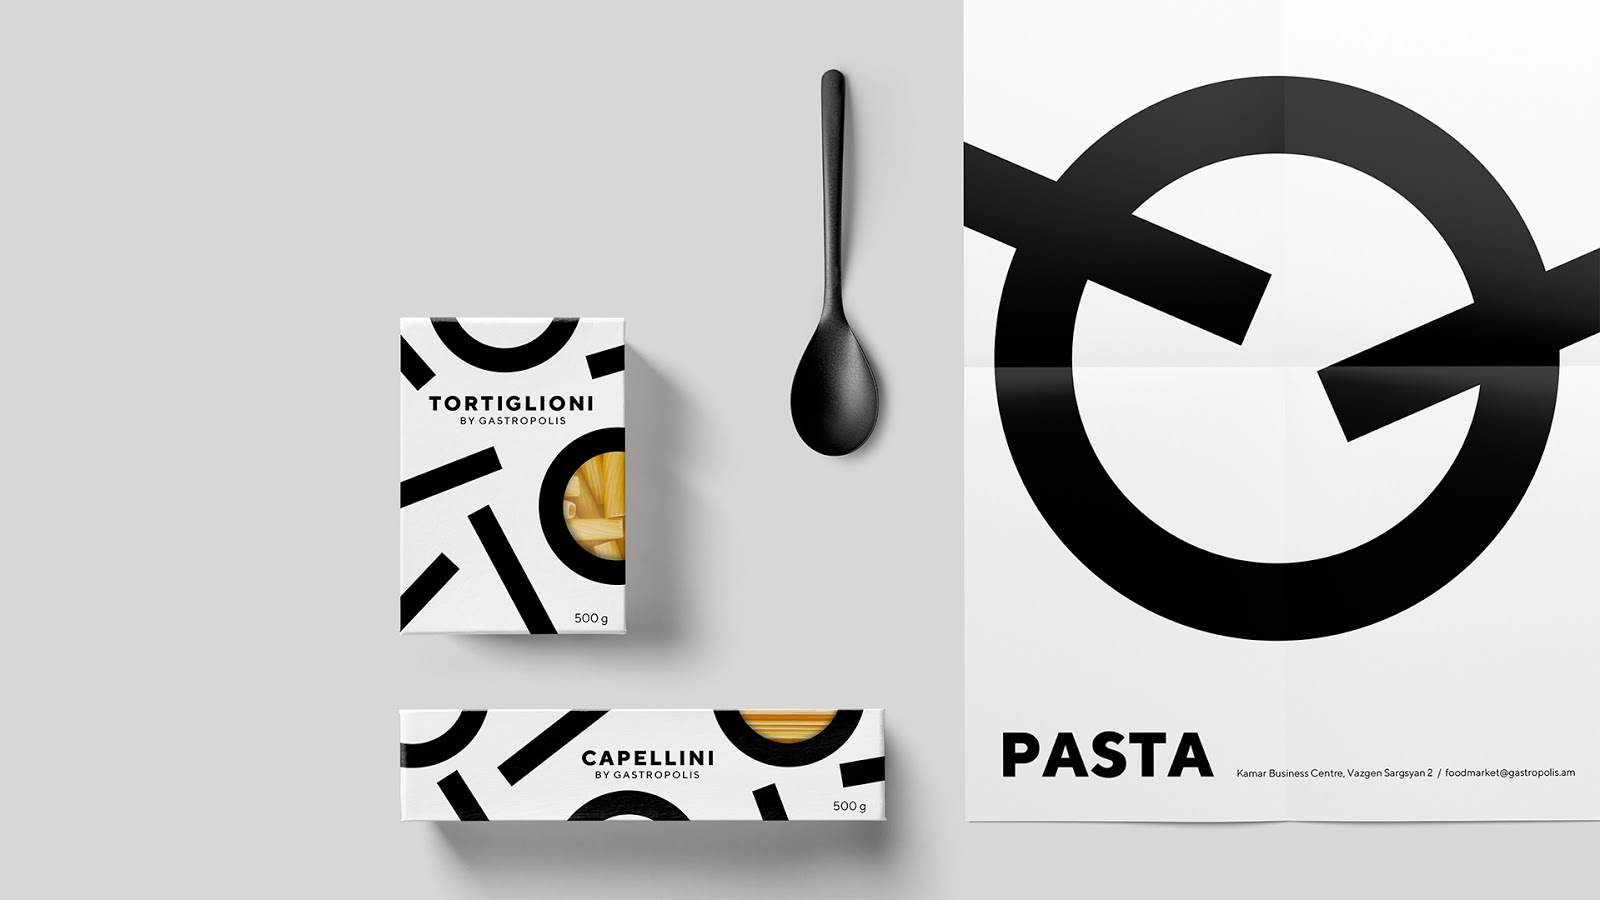 快餐简餐甜品面包咖啡西安oe欧亿体育app官方下载
品牌策划包装设计VI设计logo设计